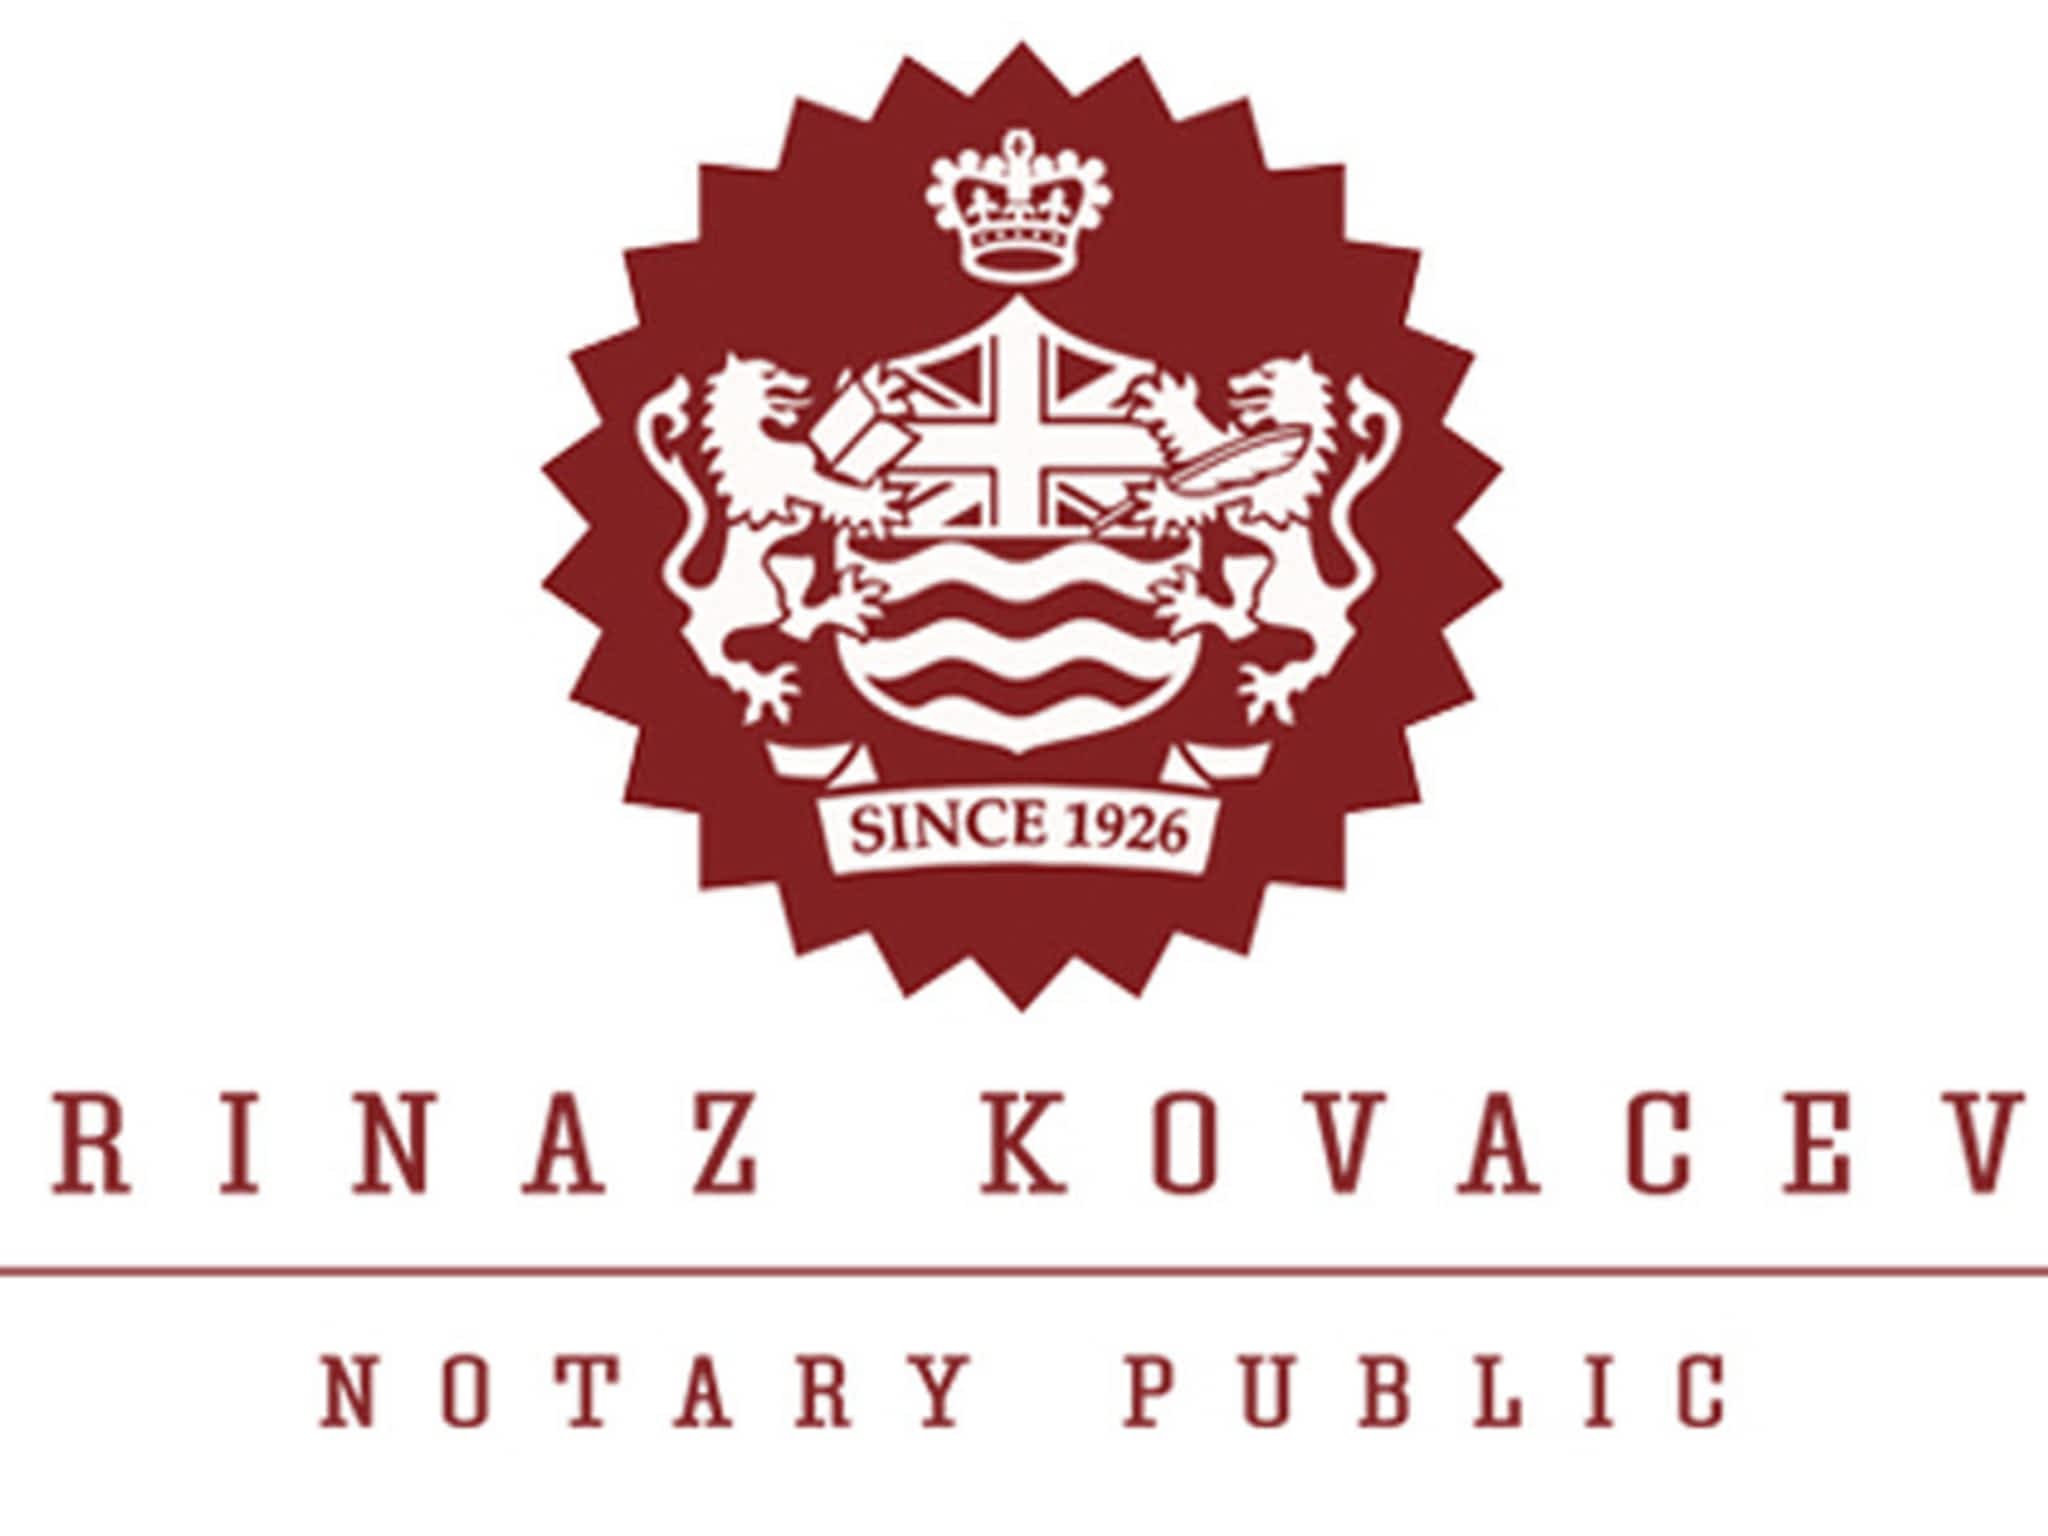 photo Farinaz Kovacevic, Notary Public